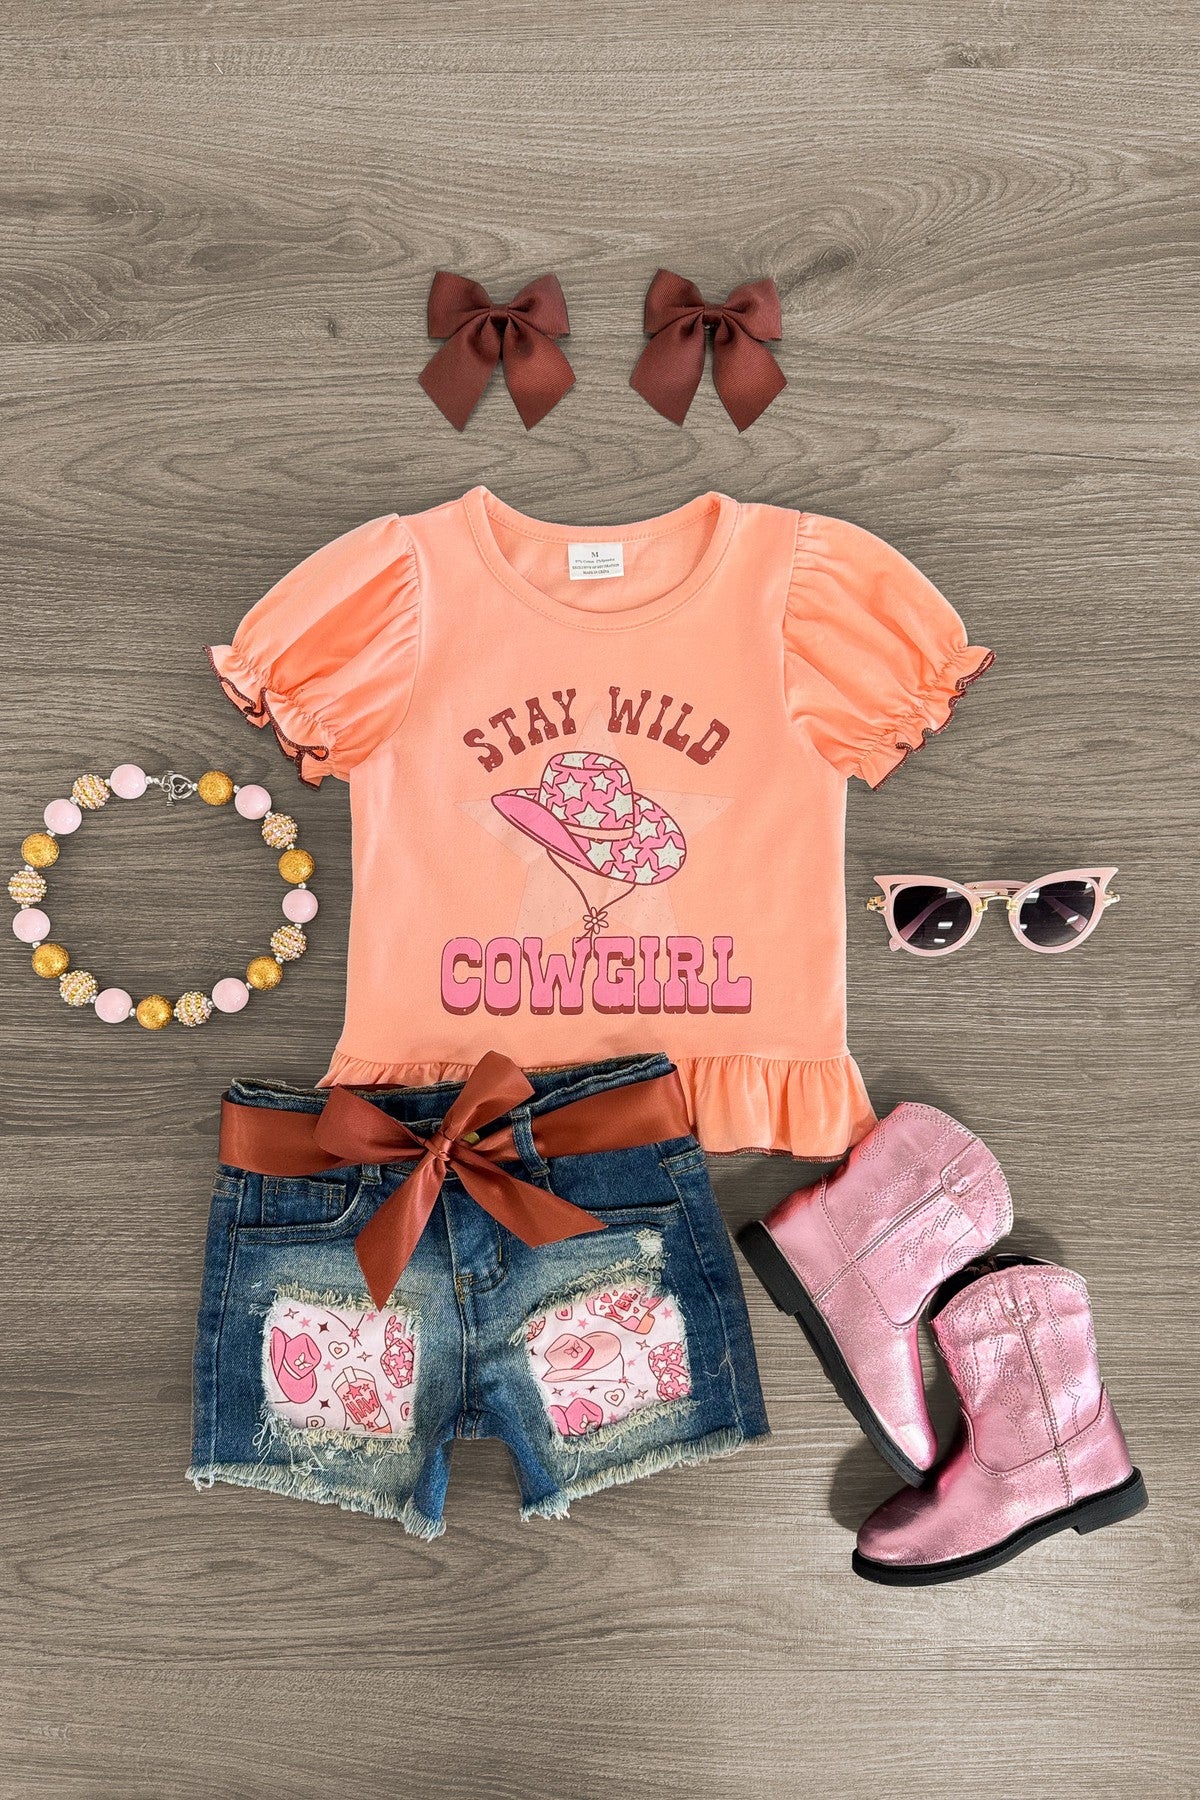 "Stay Wild Cowgirl" Denim Short Set - Sparkle in Pink